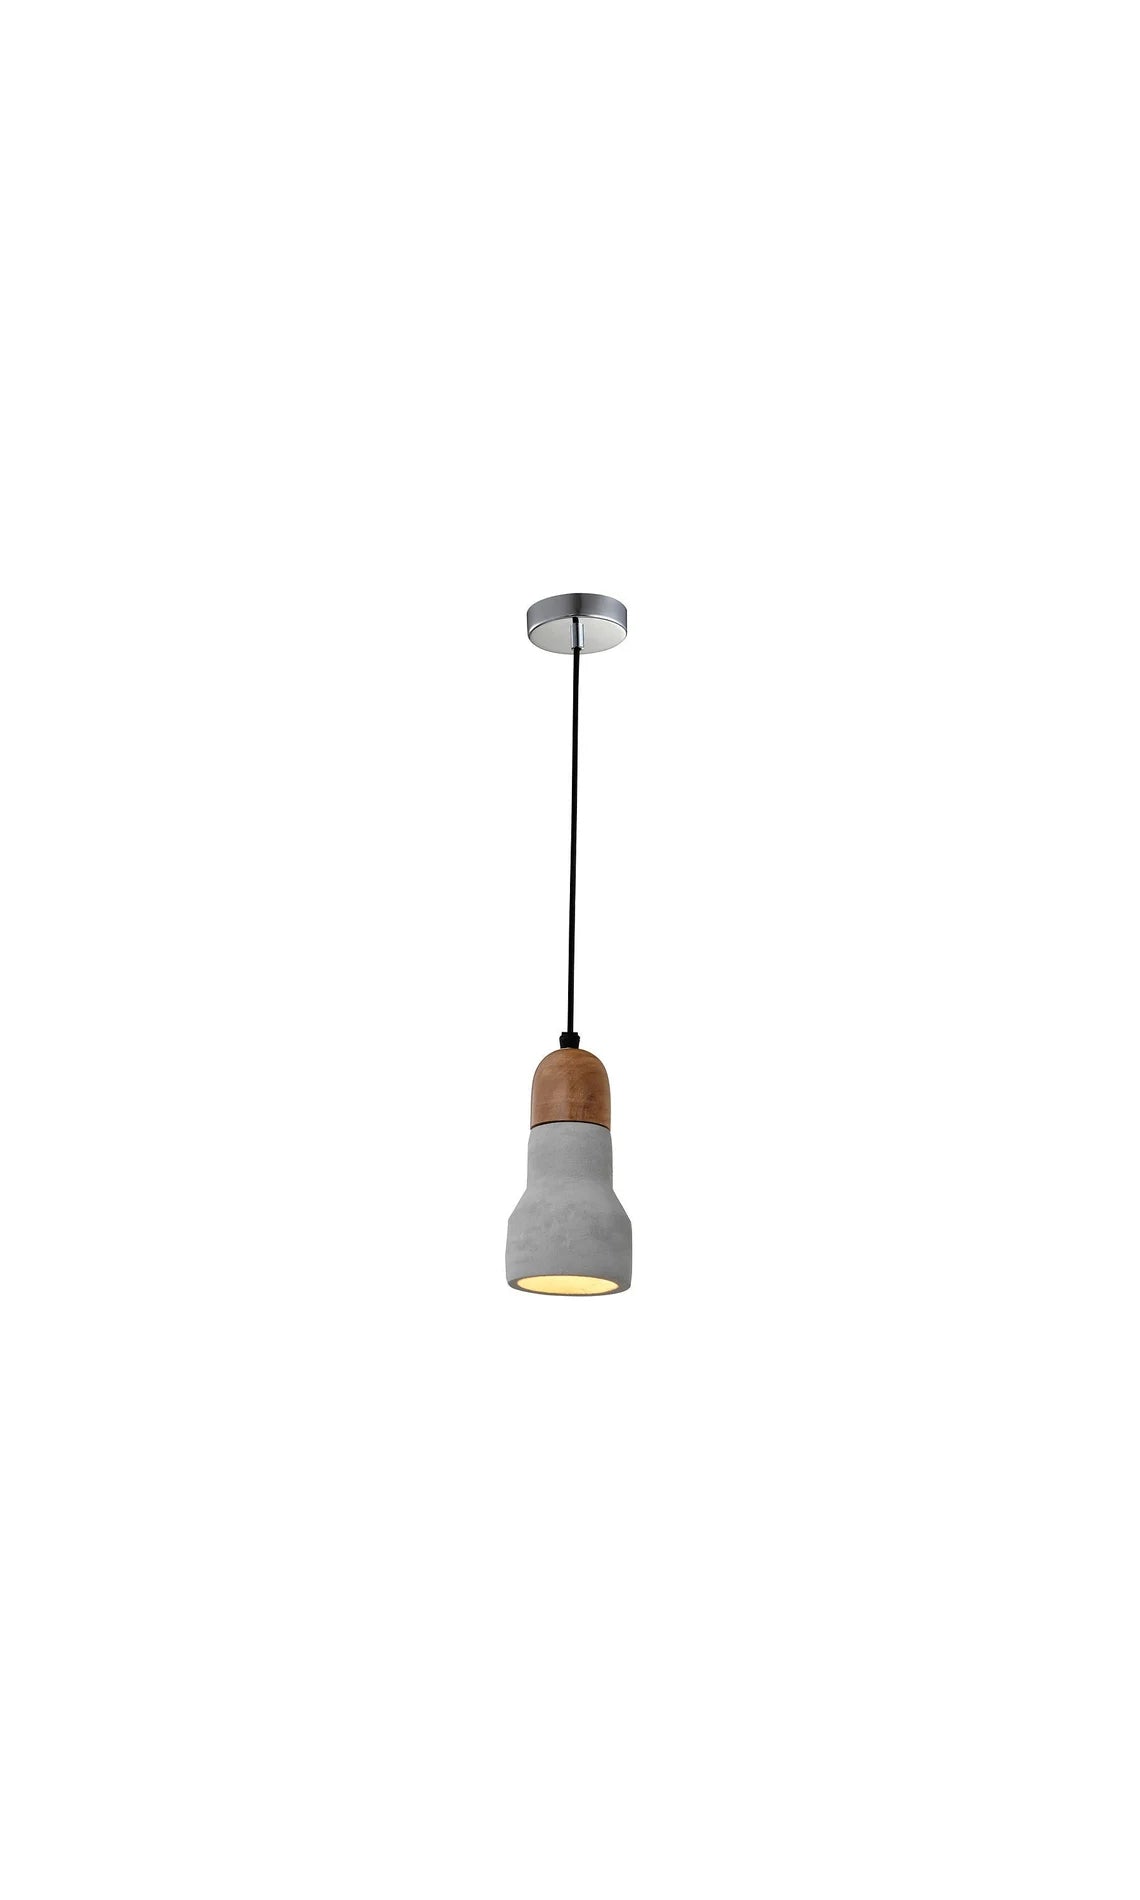 Industrial Concrete pendant light wood pendant lamp